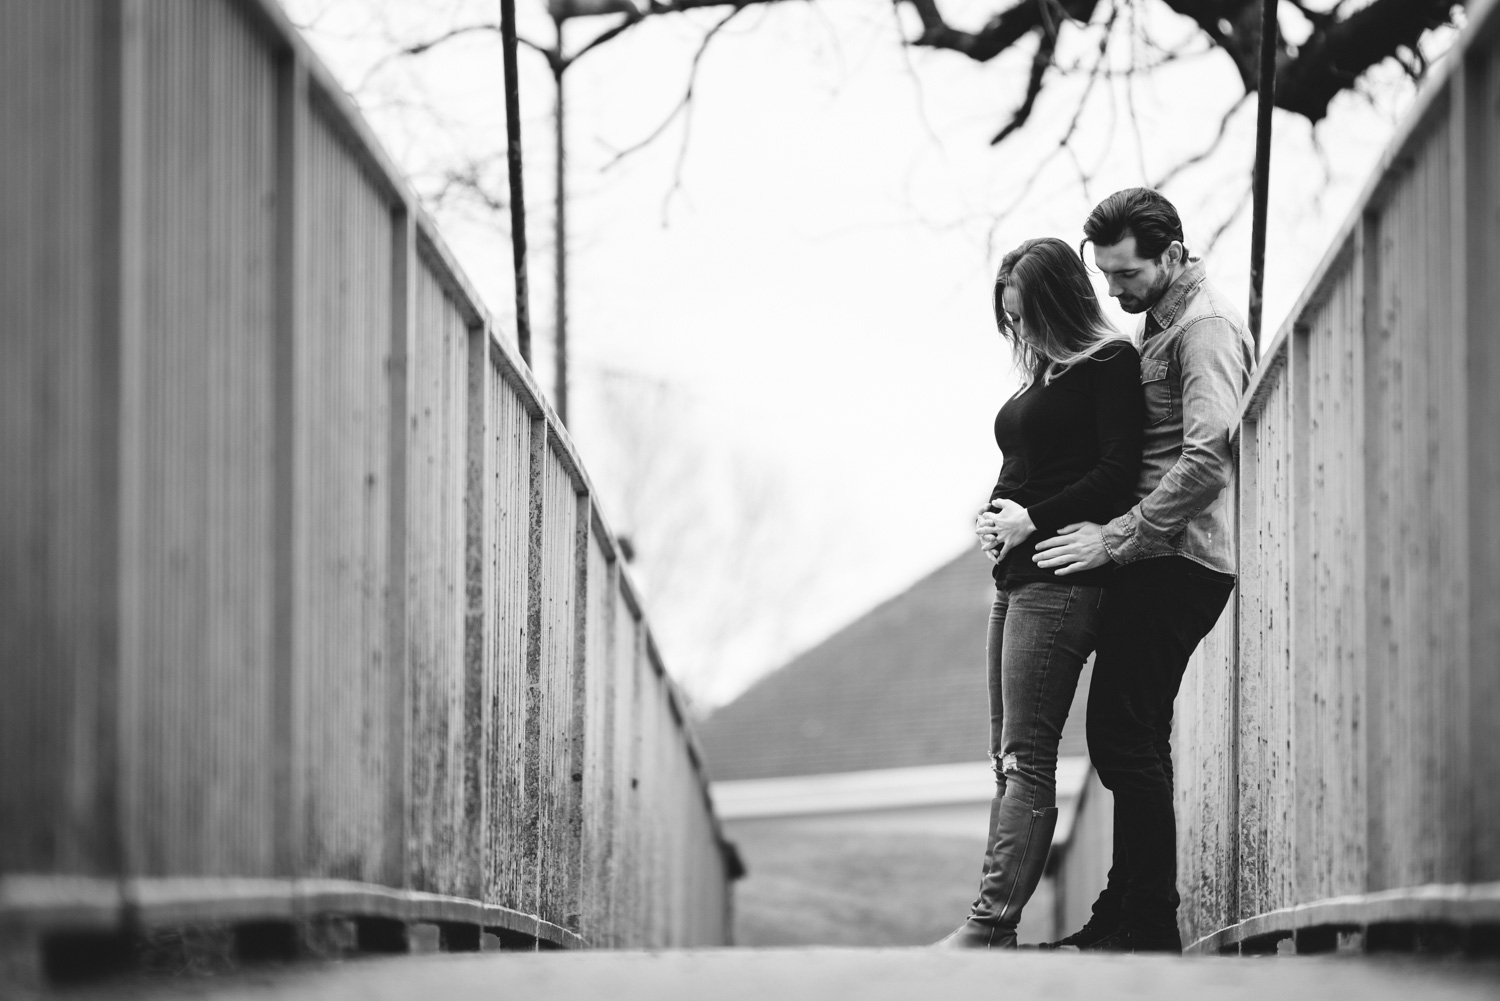 Couple stood on bridge holding baby bump